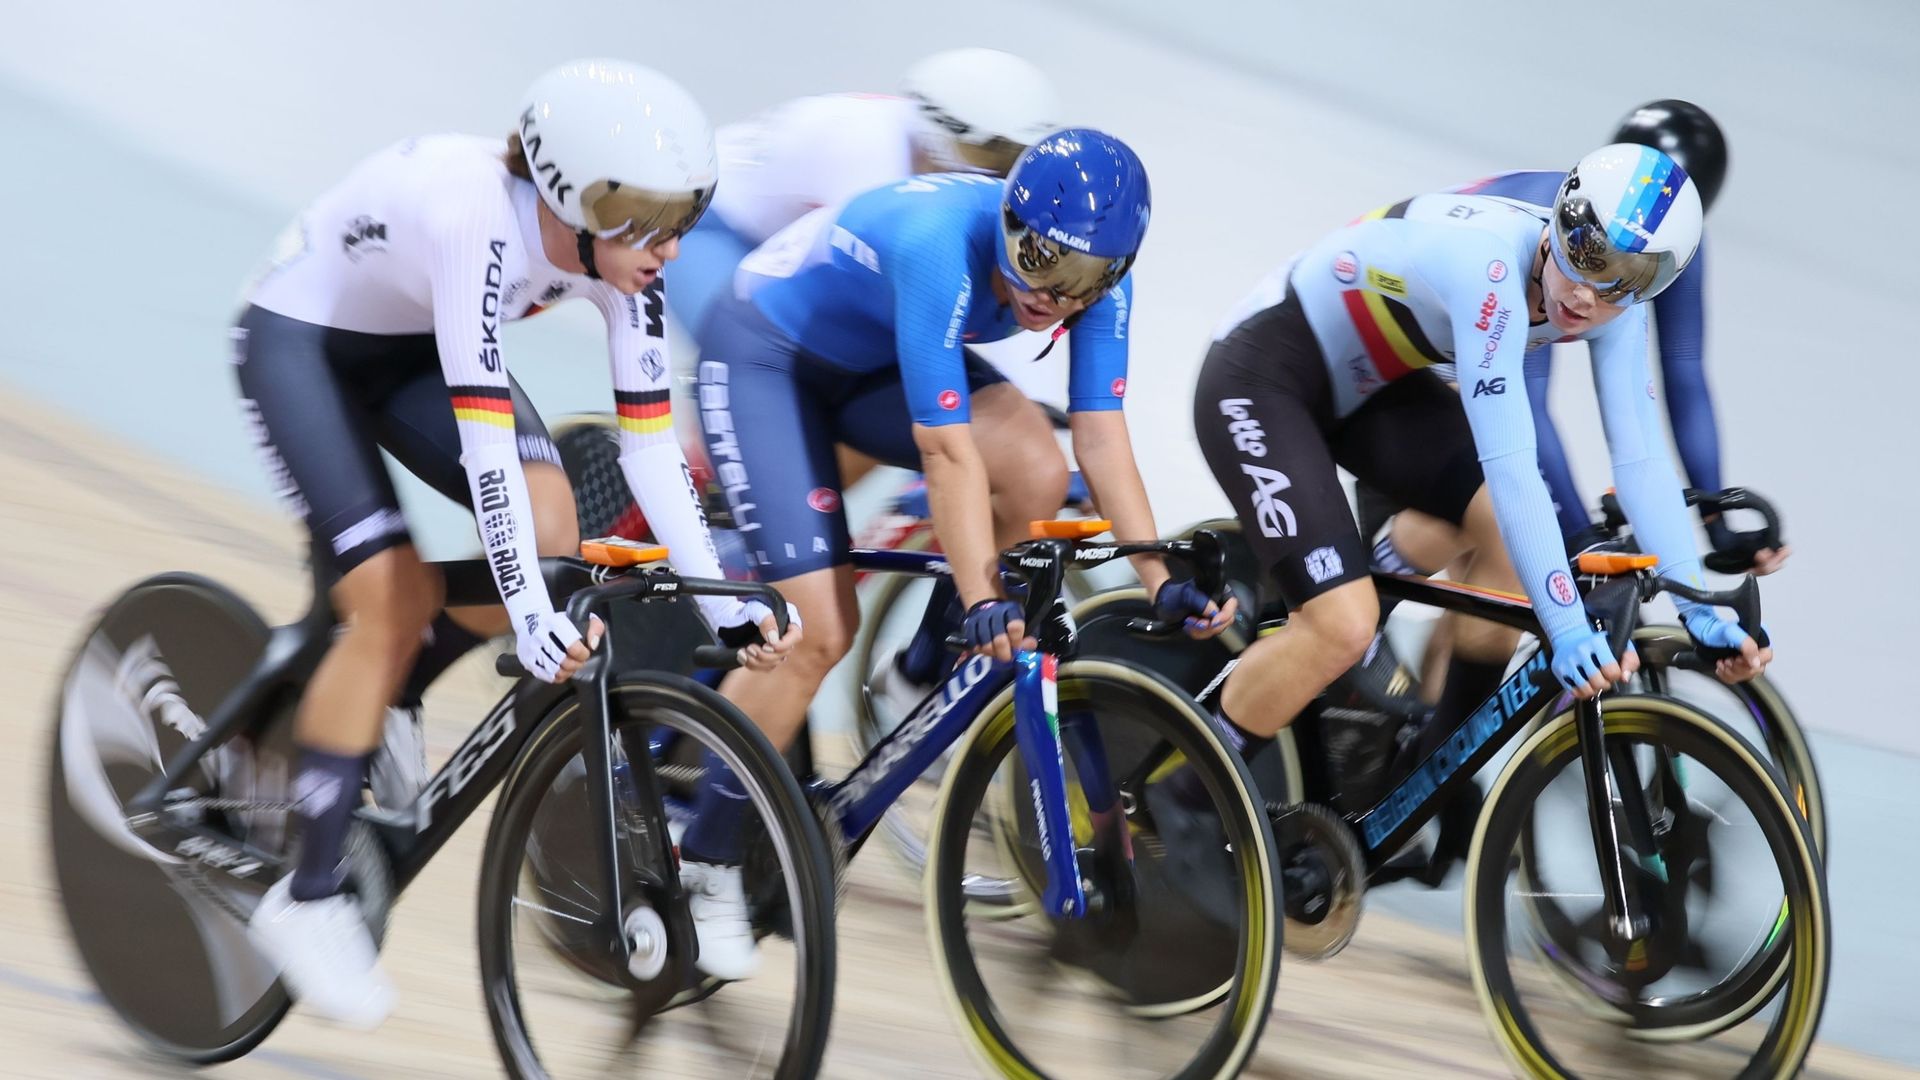 La Belge Lotte Kopecky a remporté l’élimination dames dans les Championnats du monde de cyclisme sur piste jeudi au vélodrome de Saint-Quentin-en-Yvelines.